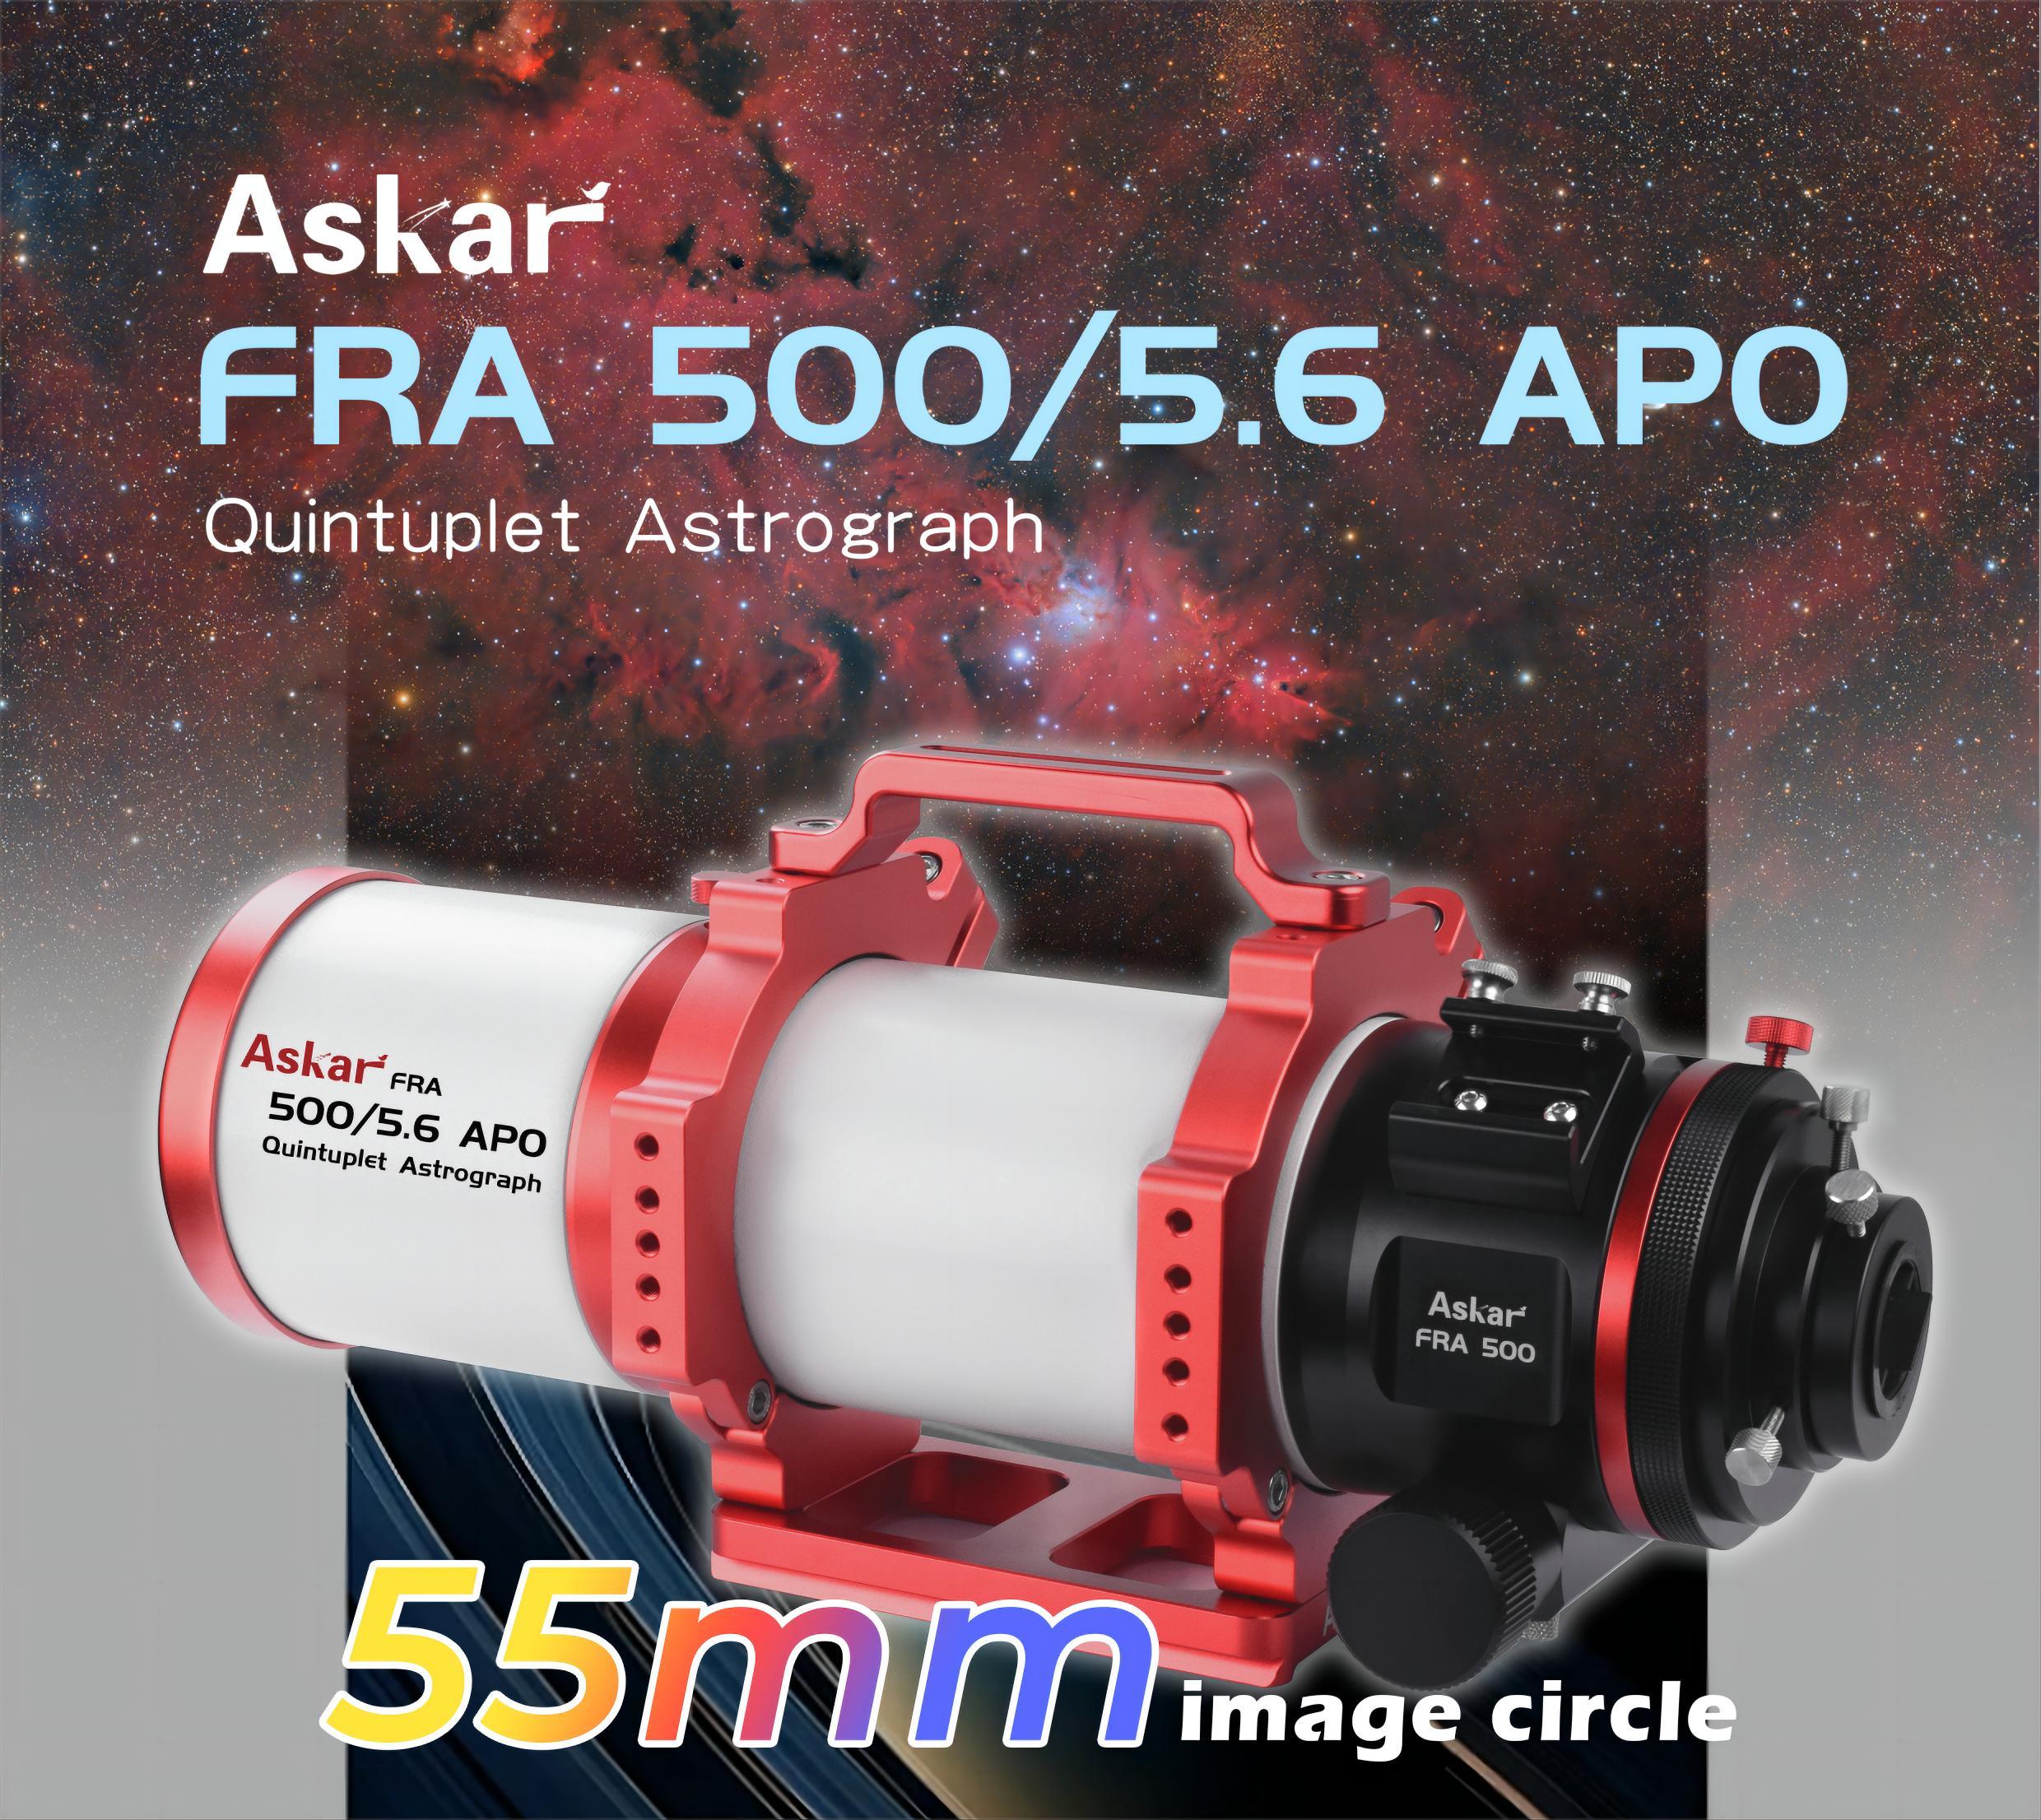 ASKAR FRA500回归！口径90mm 焦比F5.6 自平场APO天文望远镜！B站上传新宣传视频